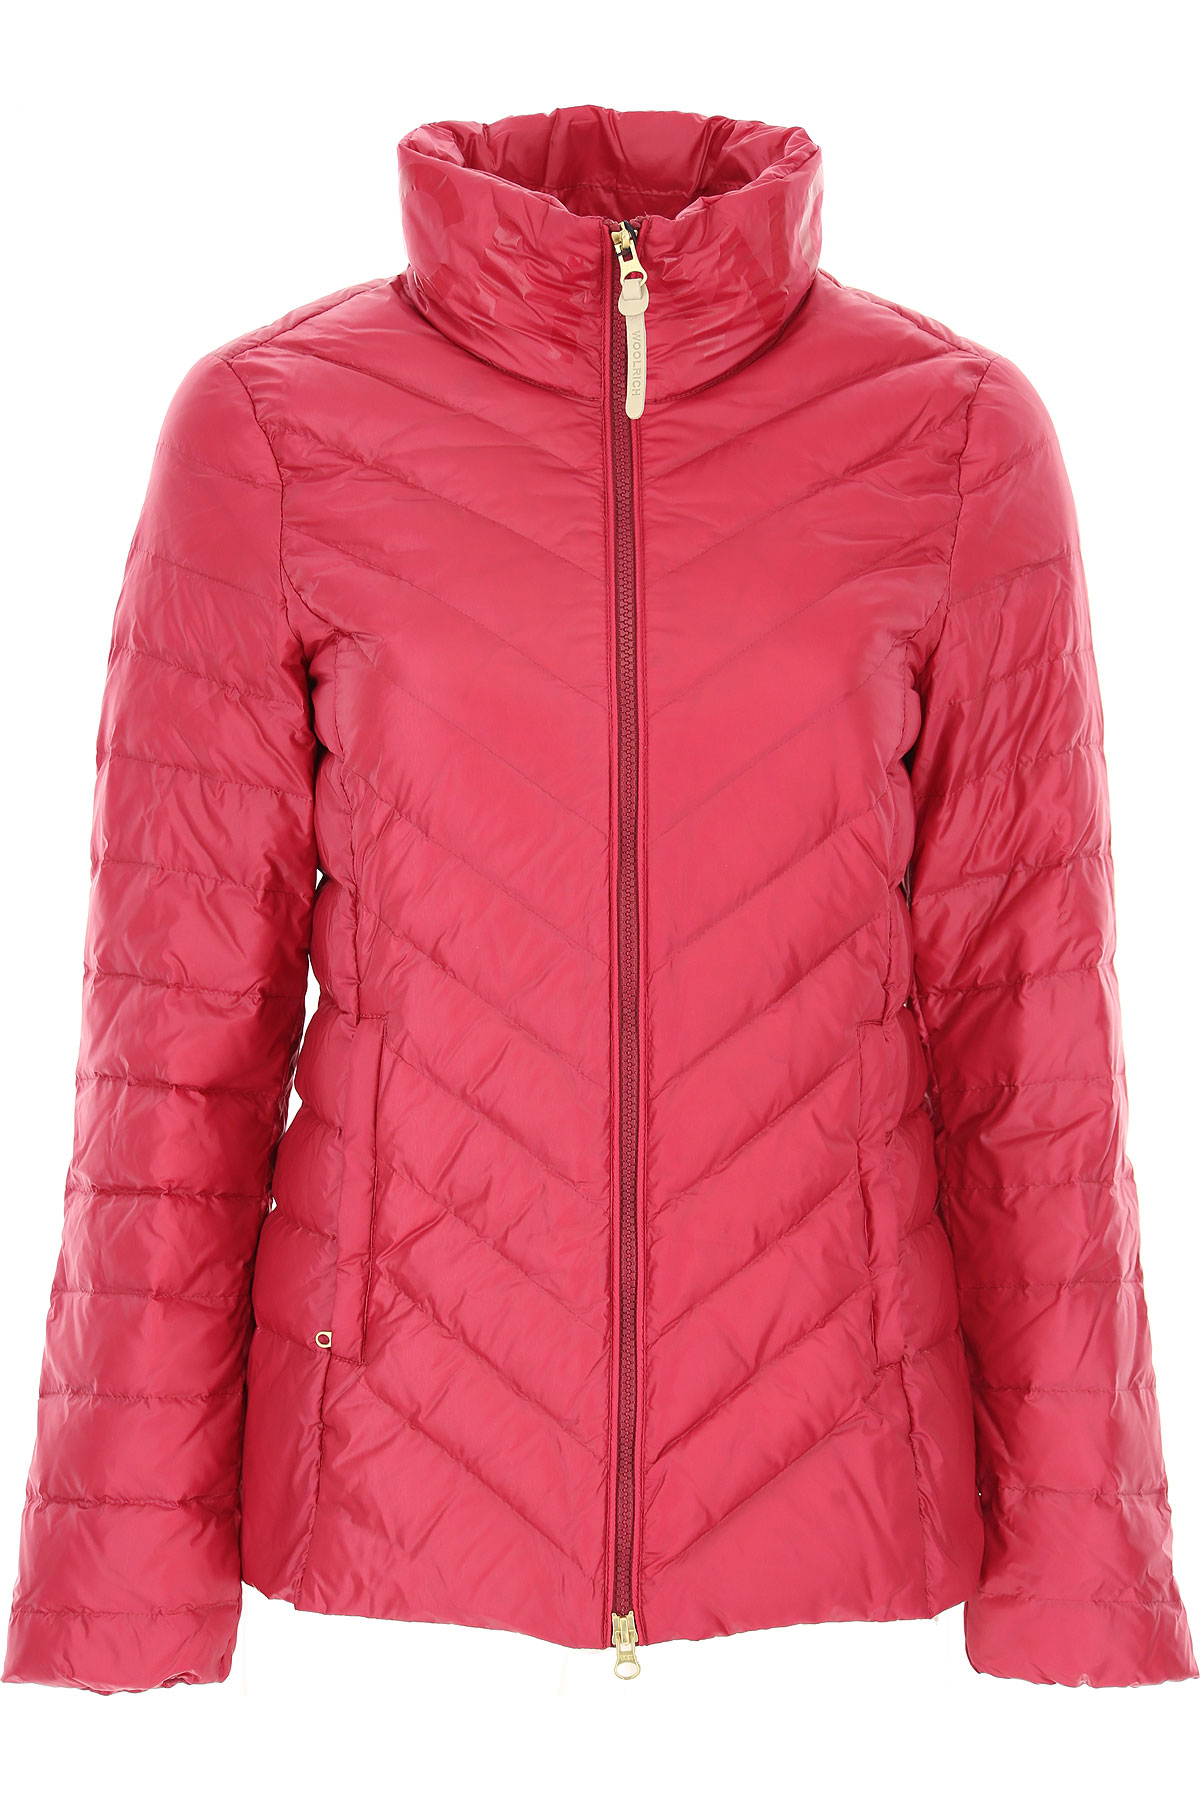 Woolrich Daunenjacke für Damen, wattierte Ski Jacke Günstig im Sale, Pink, Polyamid, 2017, 40 M